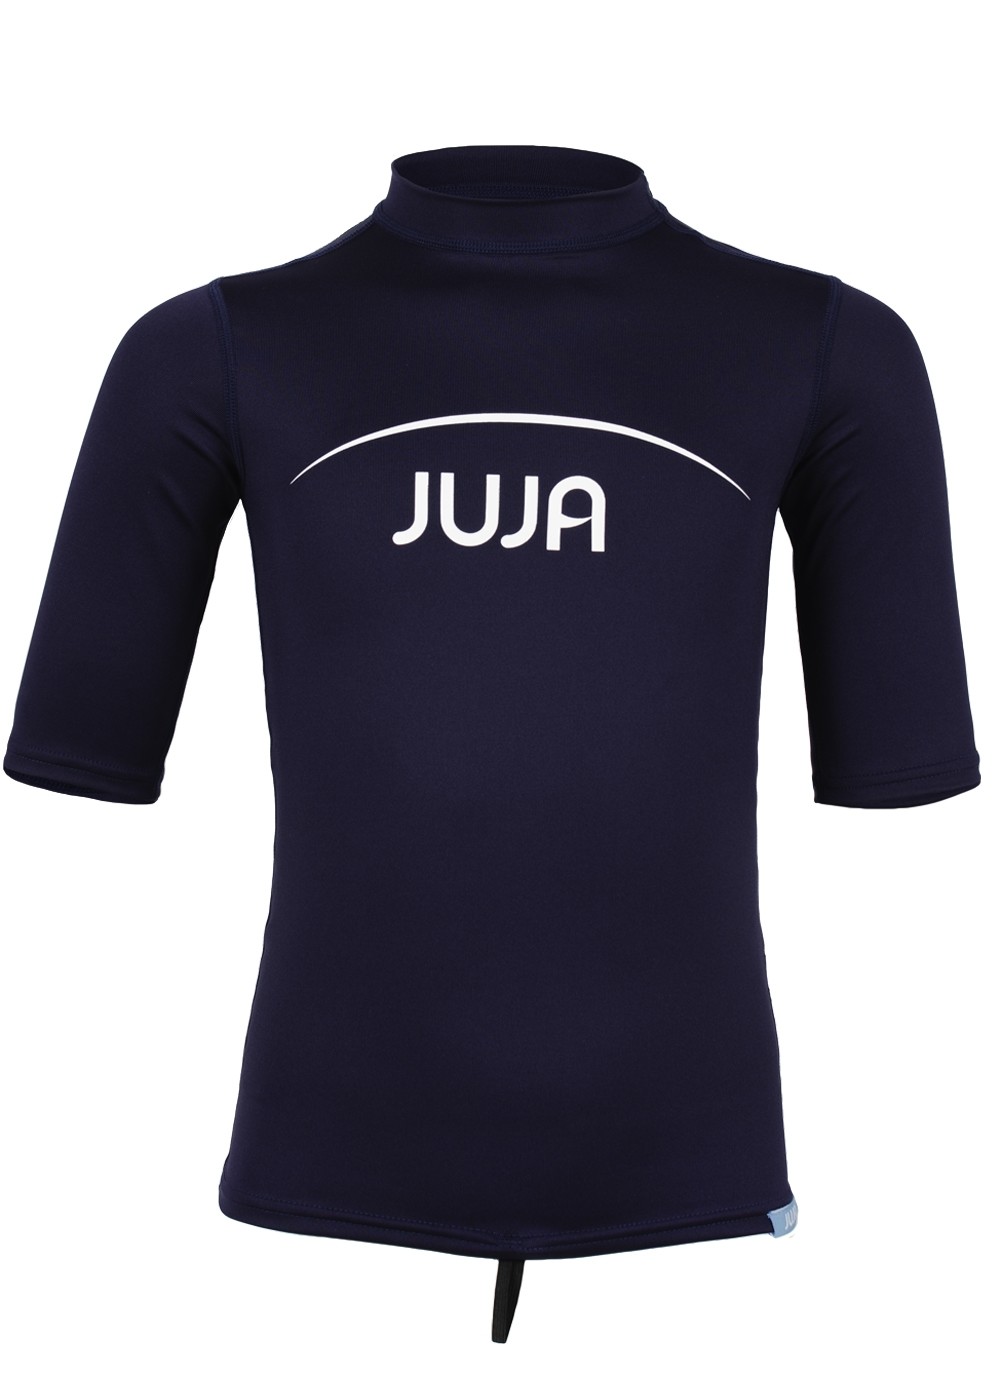 JUJA - UV swim shirt for children - short-sleeve - navy